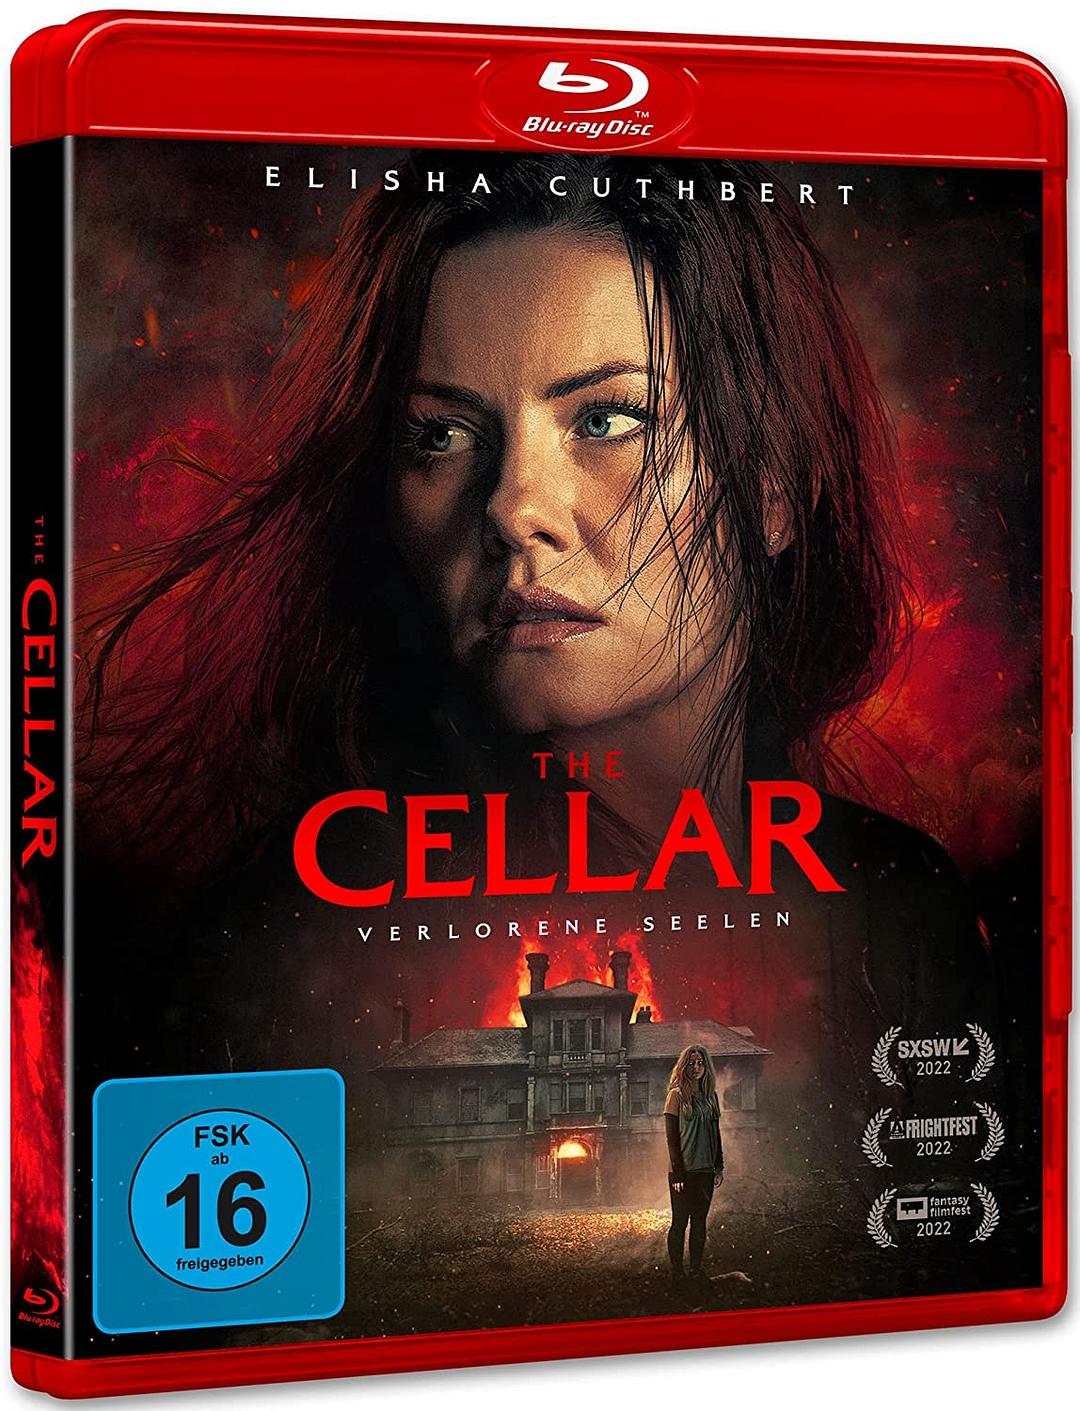 恐怖地窖 [DIY简繁/双语字幕] The Cellar 2022 Blu-ray 1080p AVC DTS-HD MA 5.1-Pete@HDSky[25.73GB]-1.jpg